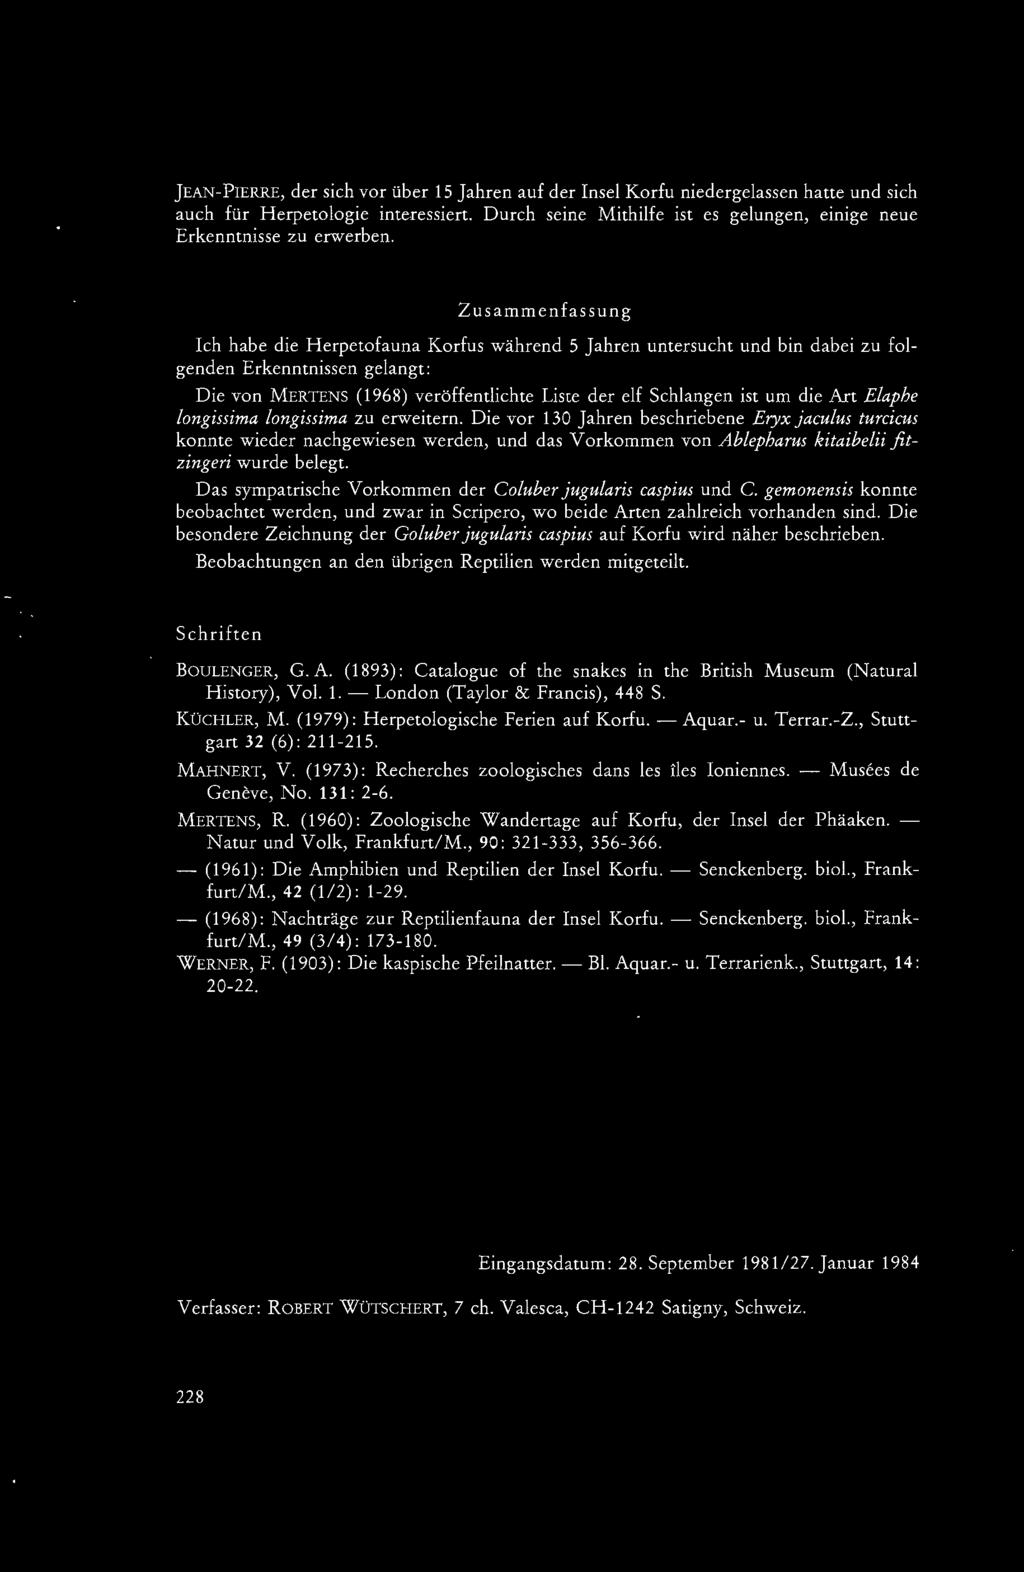 Zusammenfassung Ich habe die Herpetofauna Korfus während 5 Jahren untersucht und bin dabei zu folgenden Erkenntnissen gelangt: Die von MERTENS (1968) veröffentlichte Liste der elf Schlangen ist um